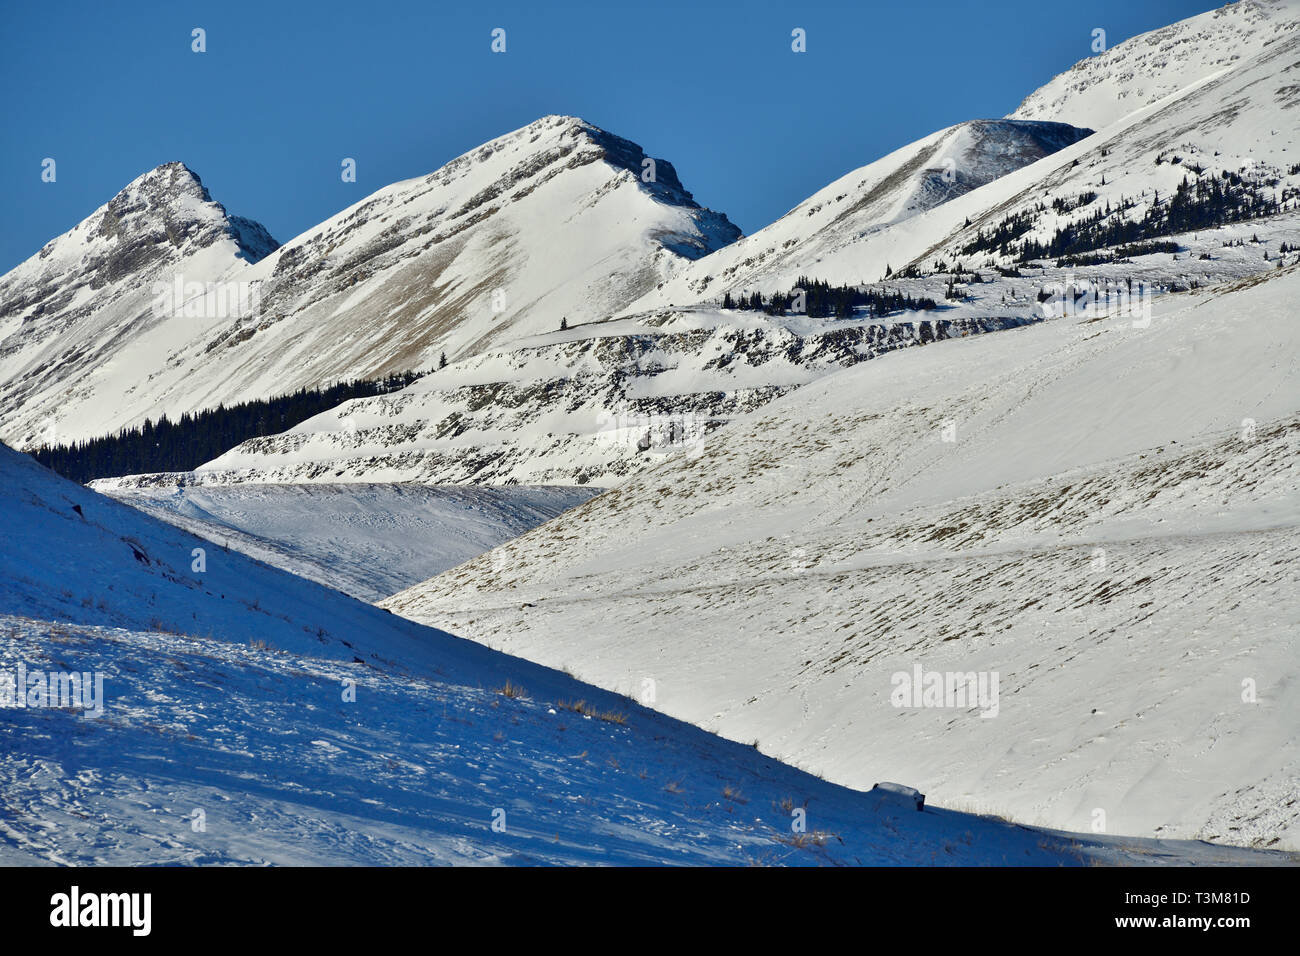 Eine Landschaft Bild des verschneiten Rocky Mountains mit steigenden Gipfeln und Tälern in der Nähe von Cadomin Alberta Kanada Stockfoto